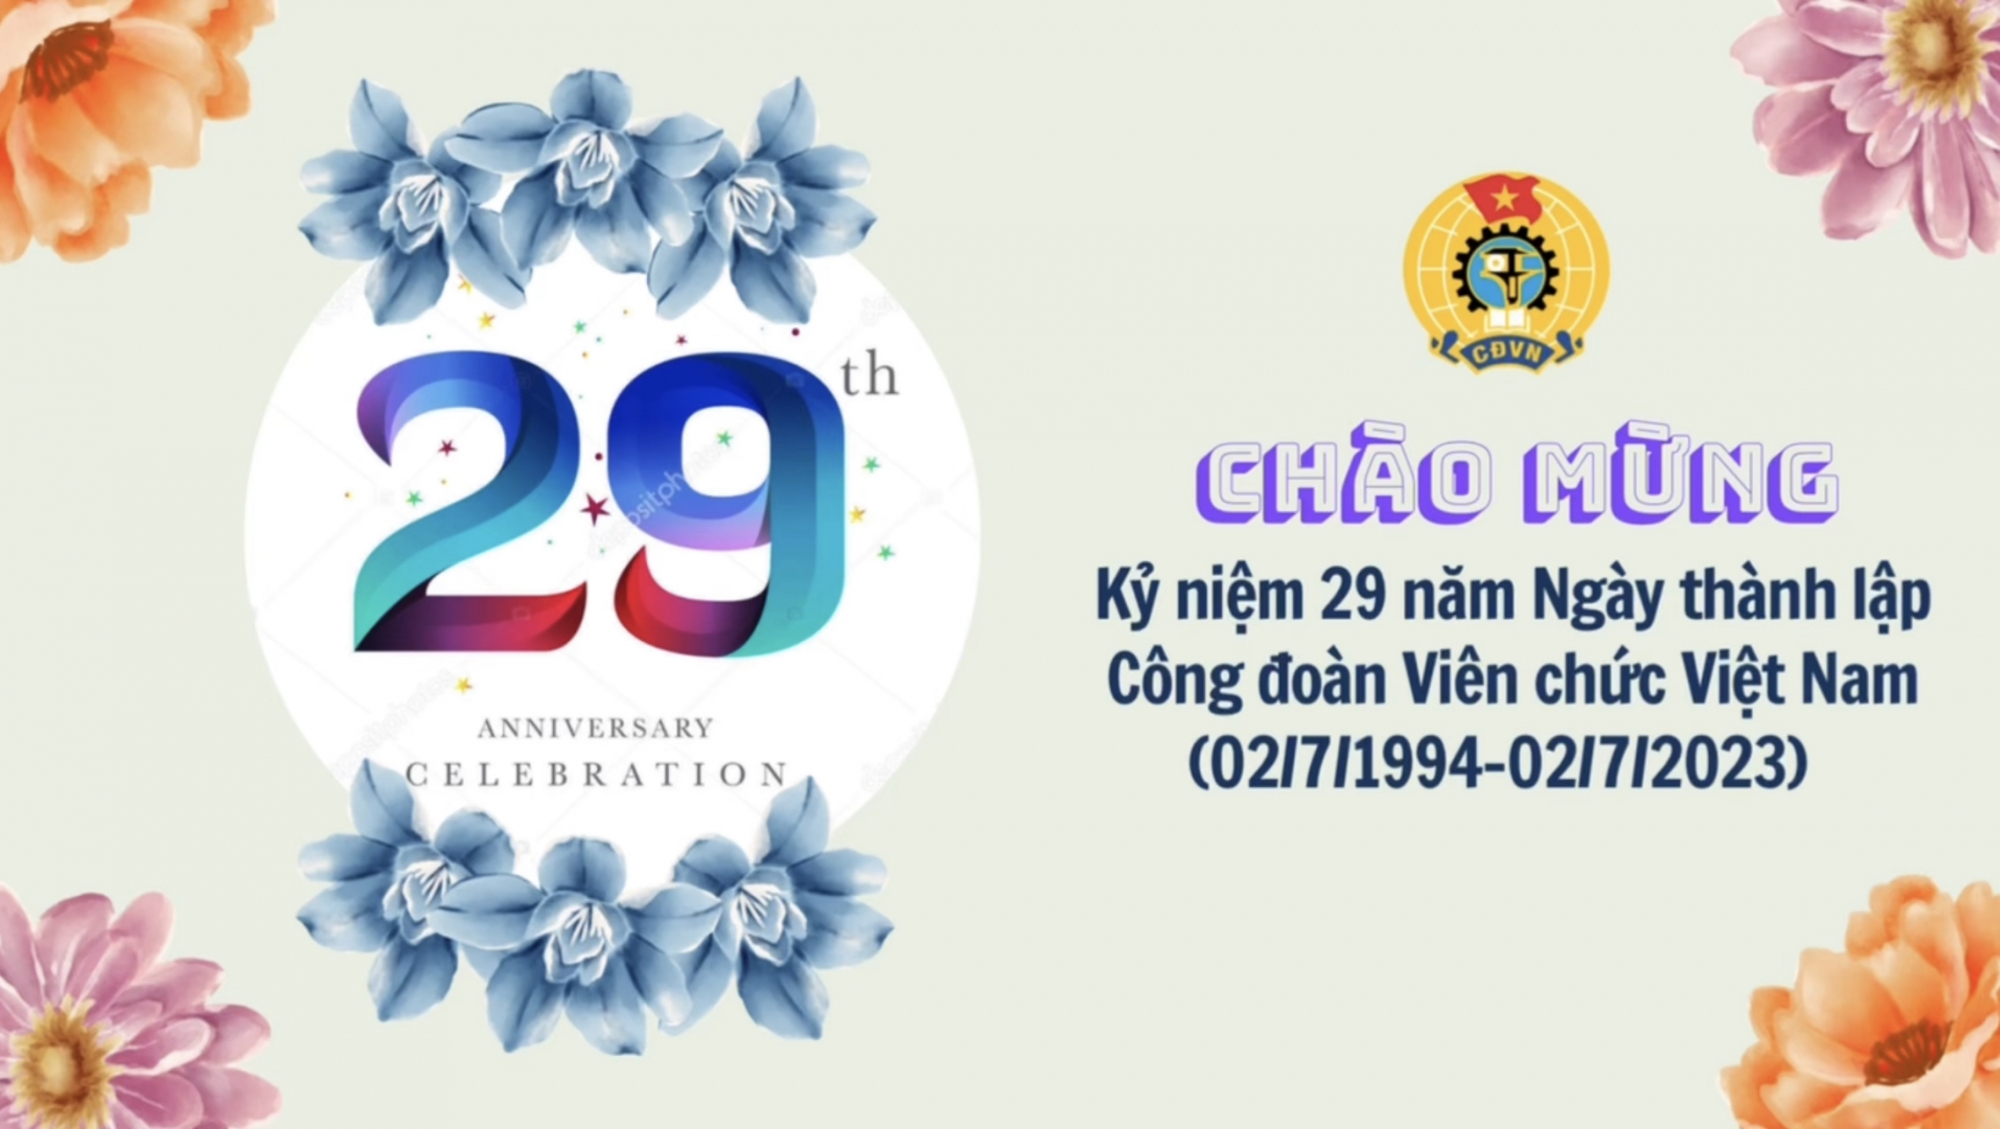 Chào mừng 29 năm Ngày thành lập Công đoàn Viên chức Việt Nam (02/7/1994 - 02/7/2023)